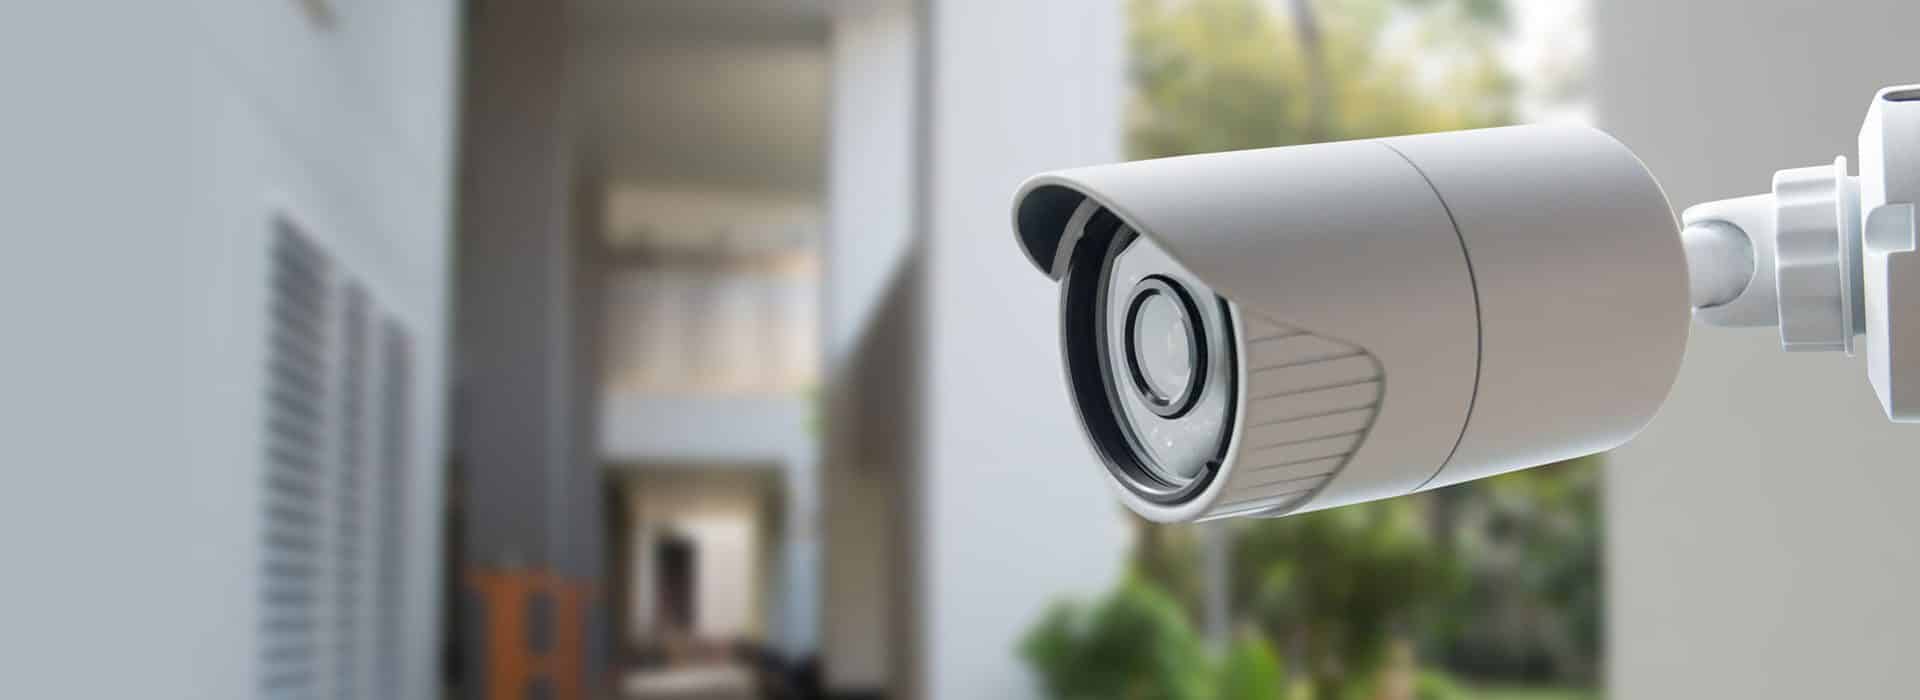 video-surveillance-home-banner